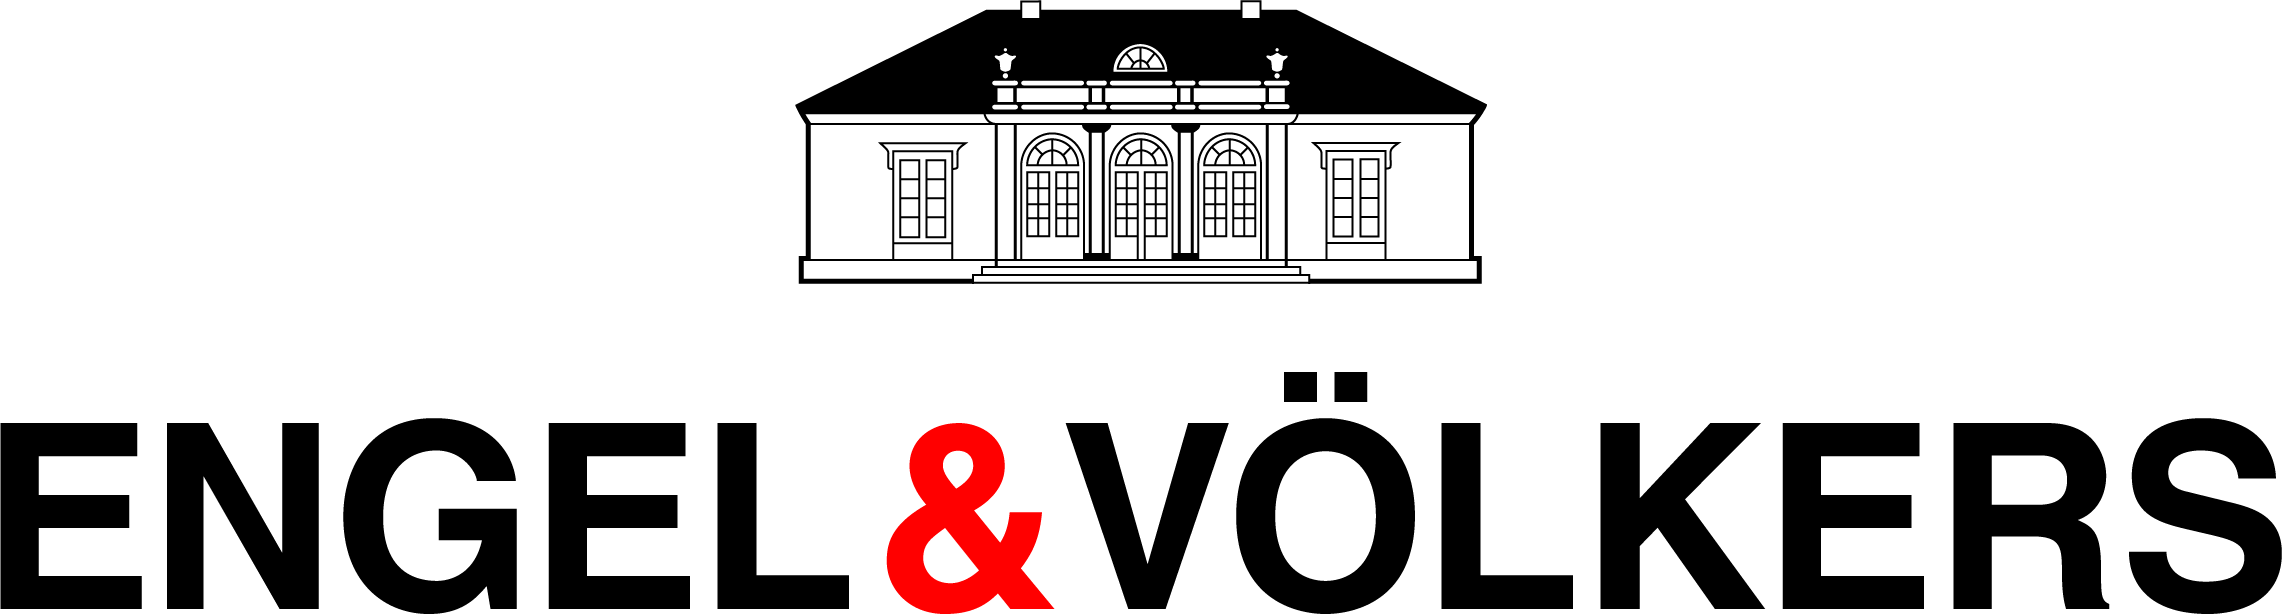 Engel & Völkers Hergiswil Logo